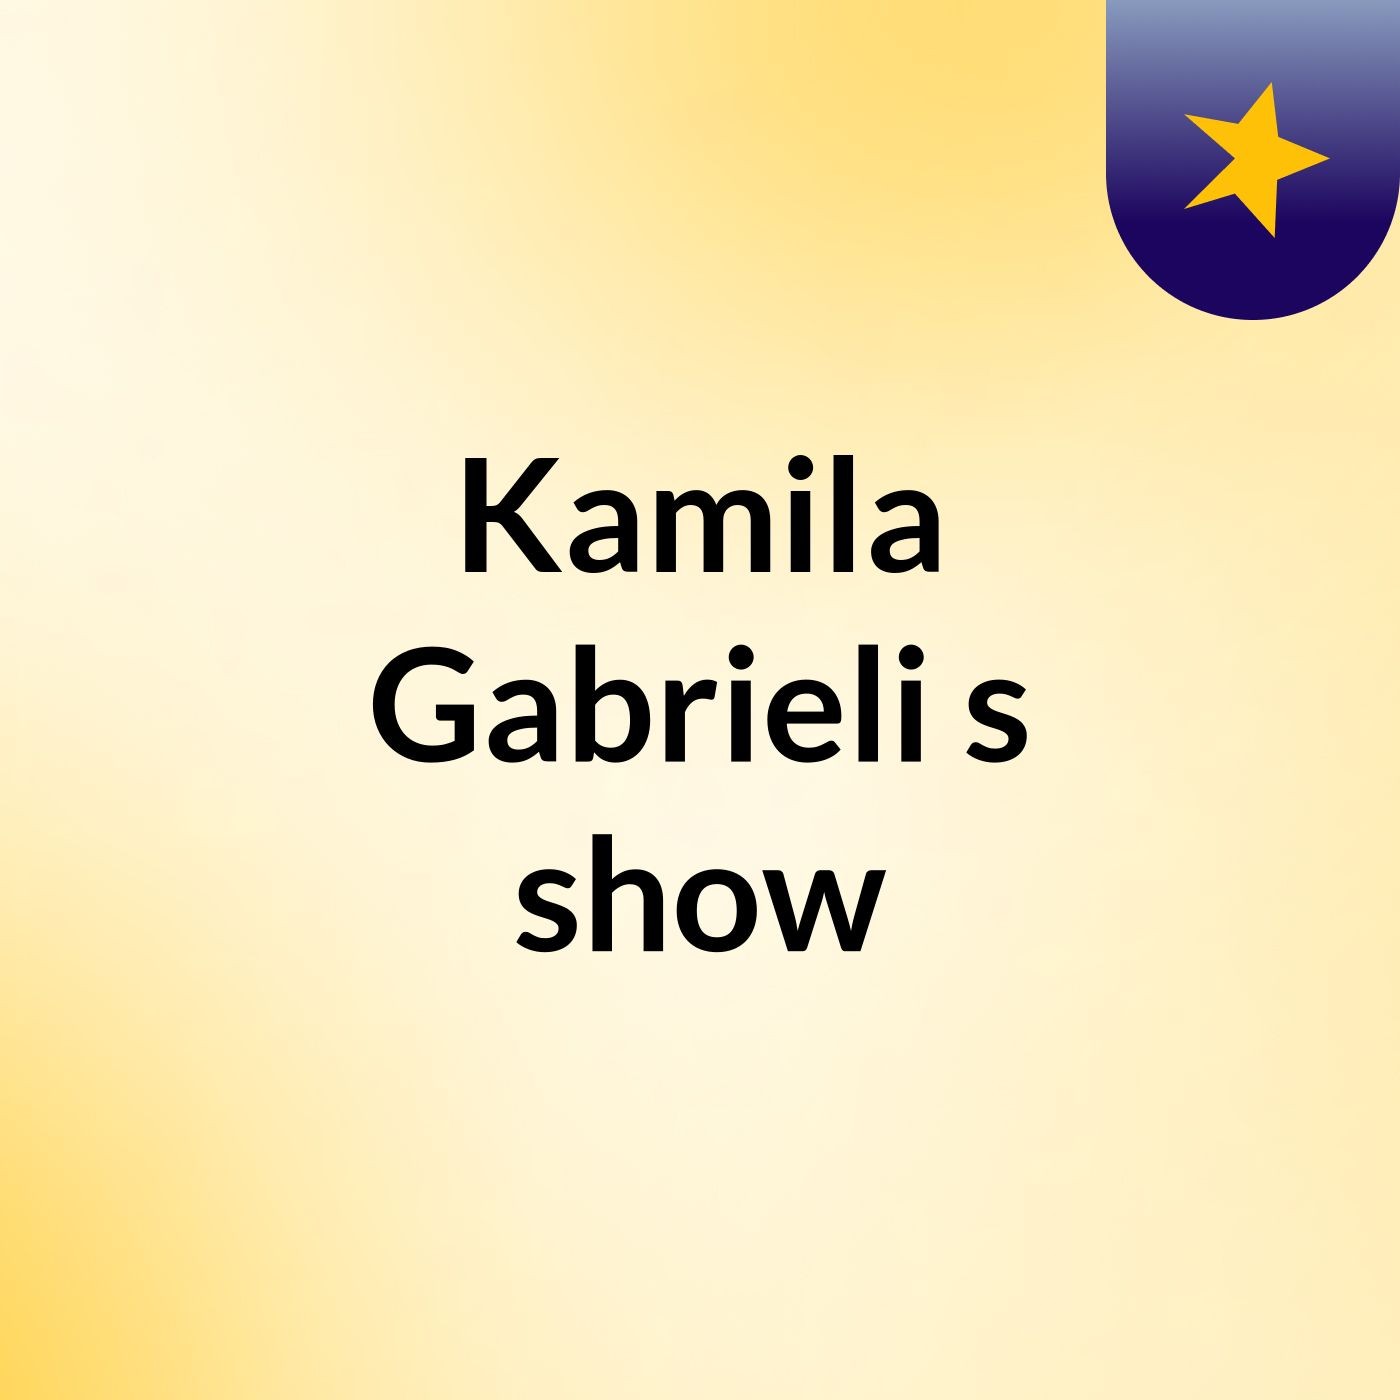 Kamila Gabrieli's show